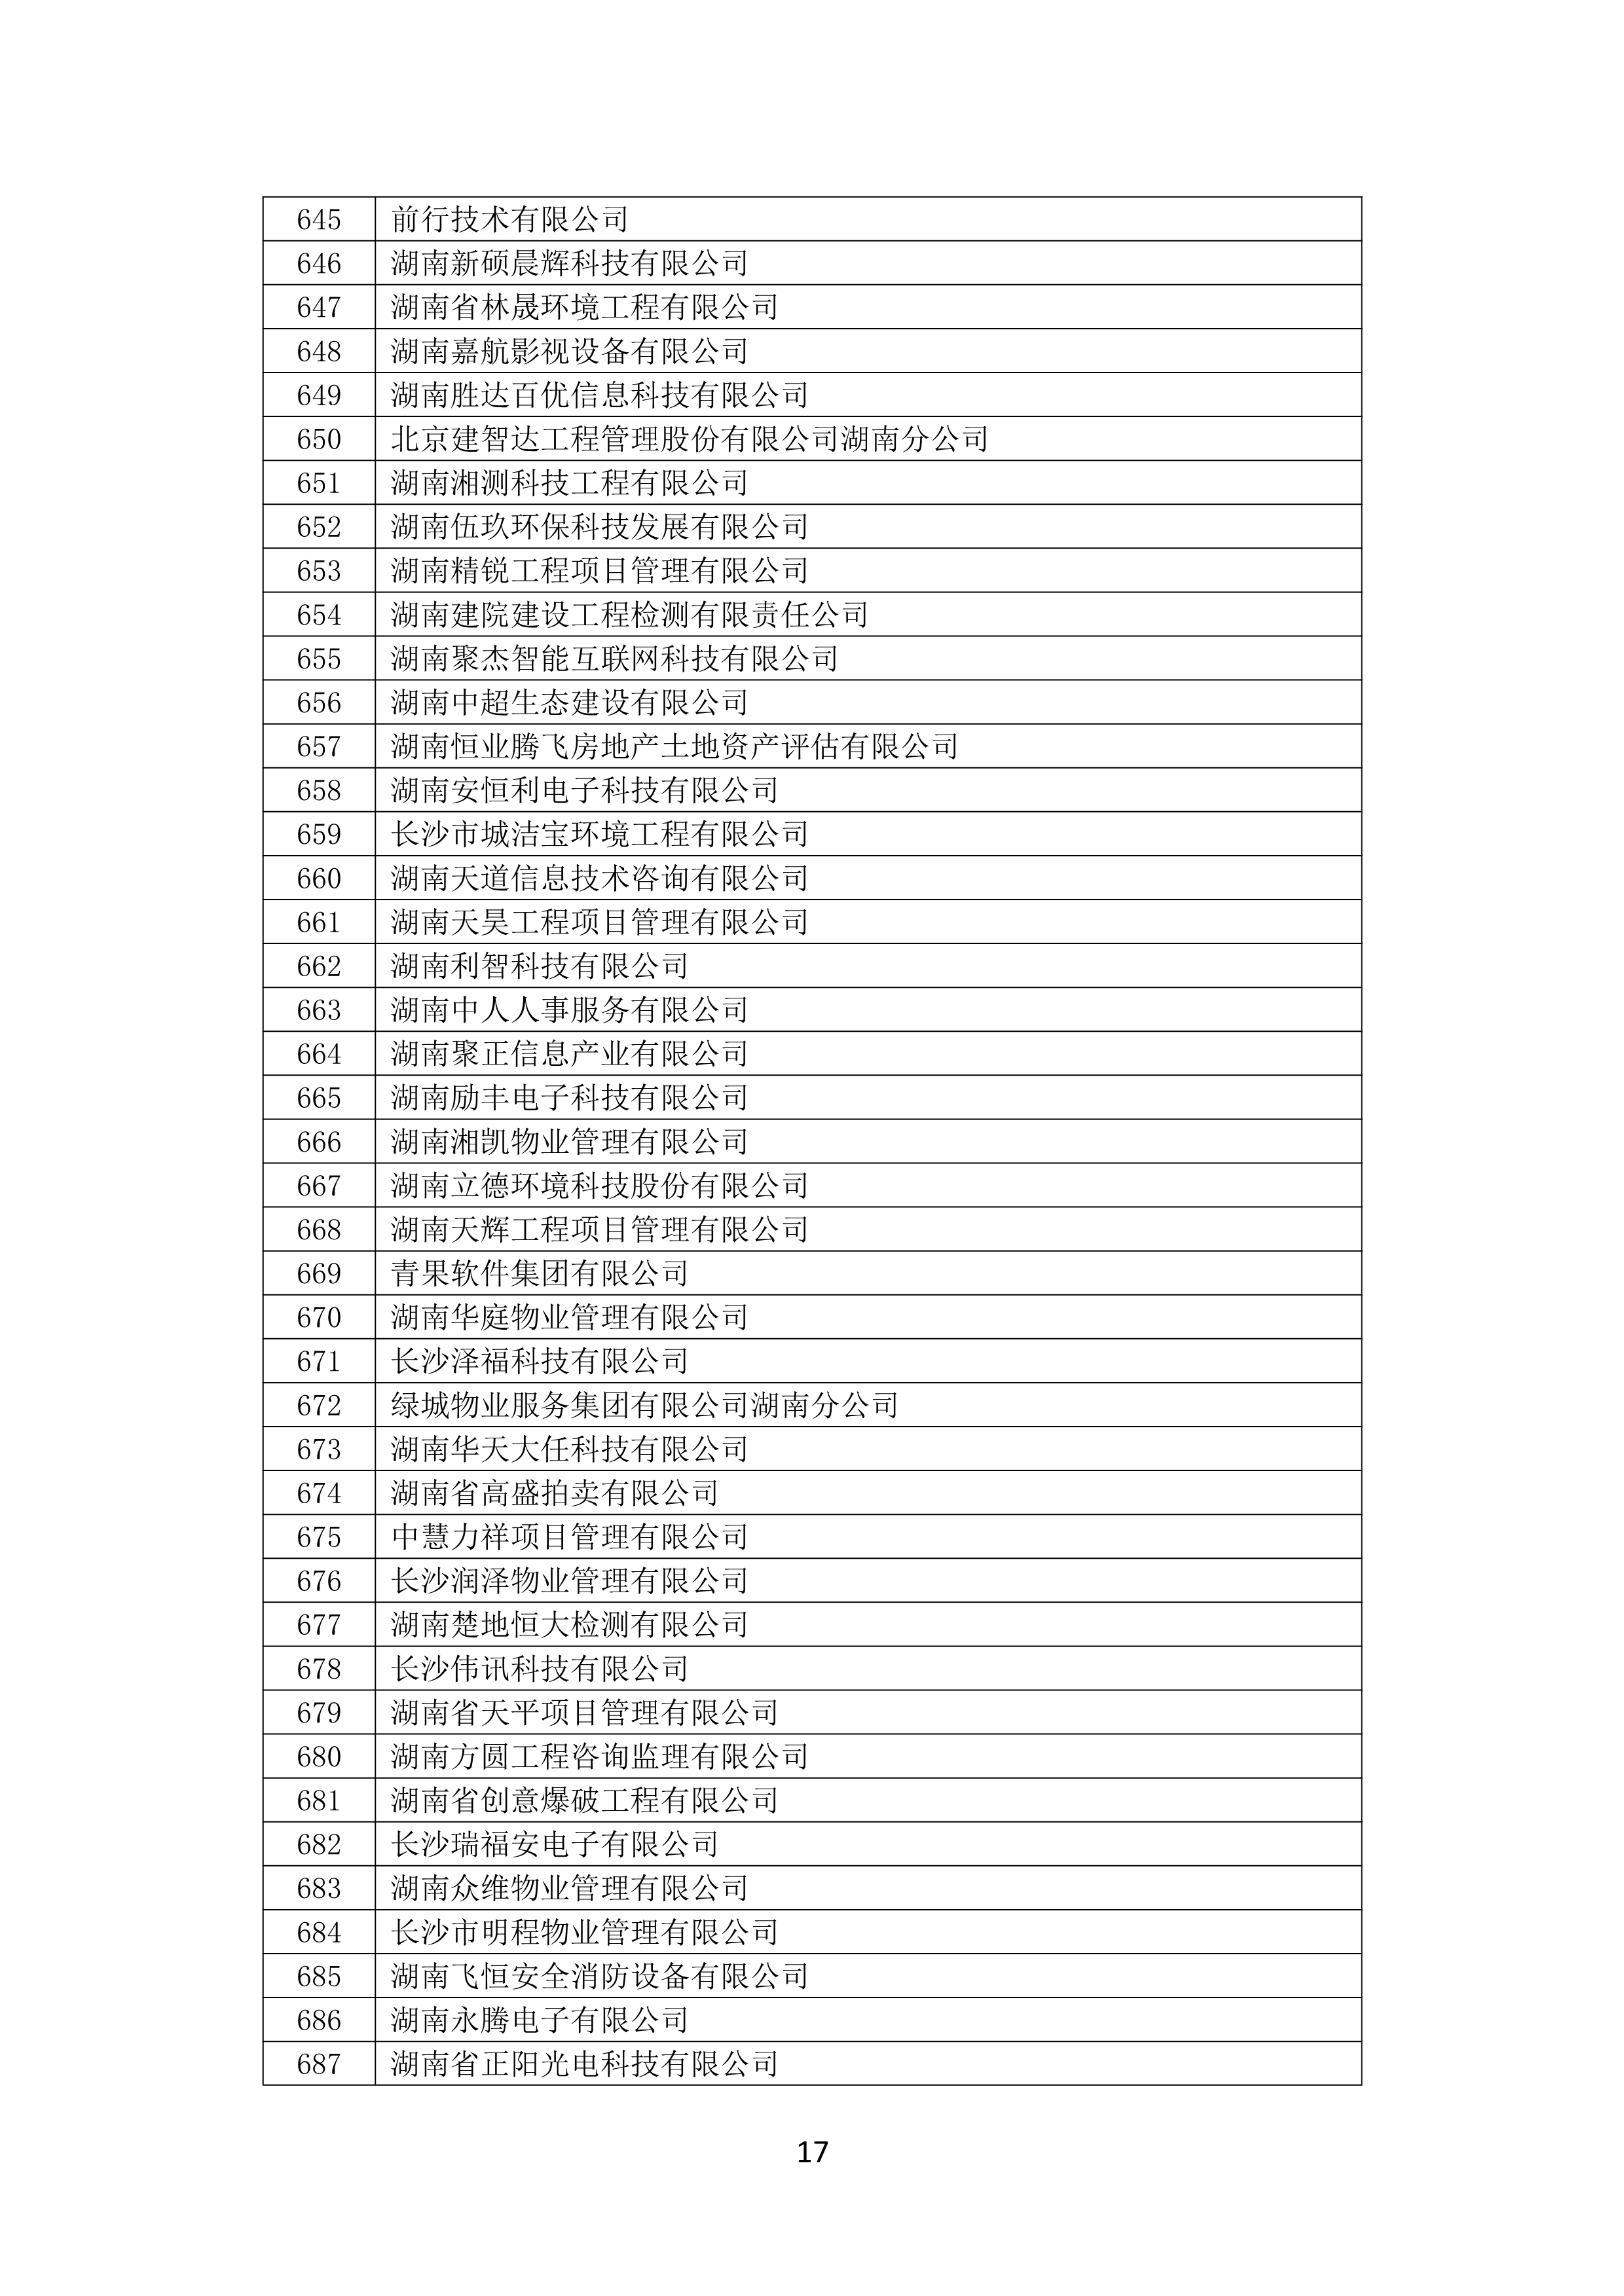 2021 年(nián)度湖南省守合同重信用企業名單_18.png